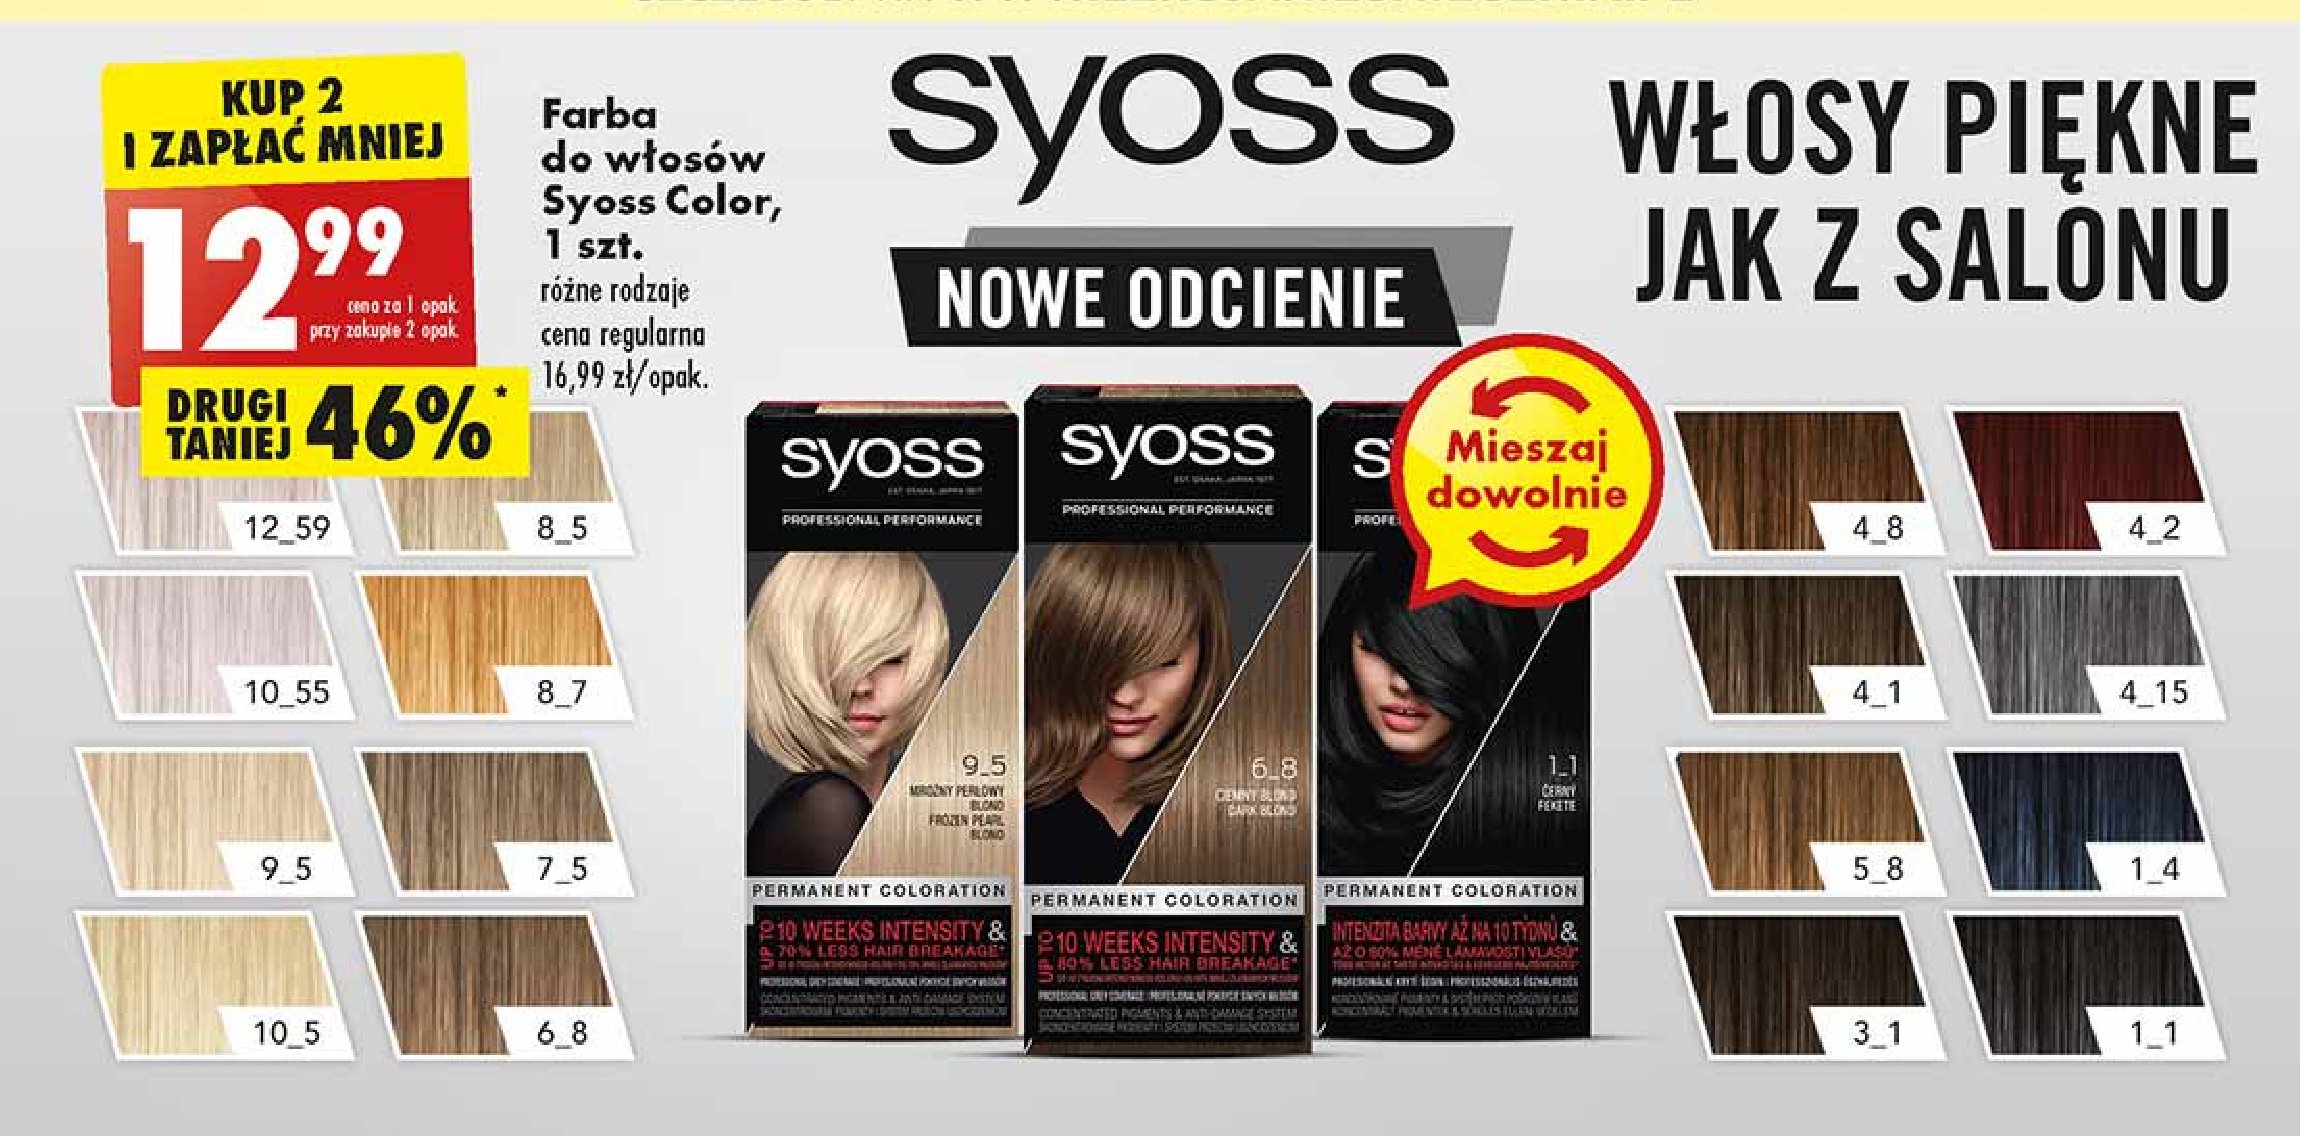 Krem do koloryzacji włosów 4-2 mahoniowy brąz Syoss professional performance promocja